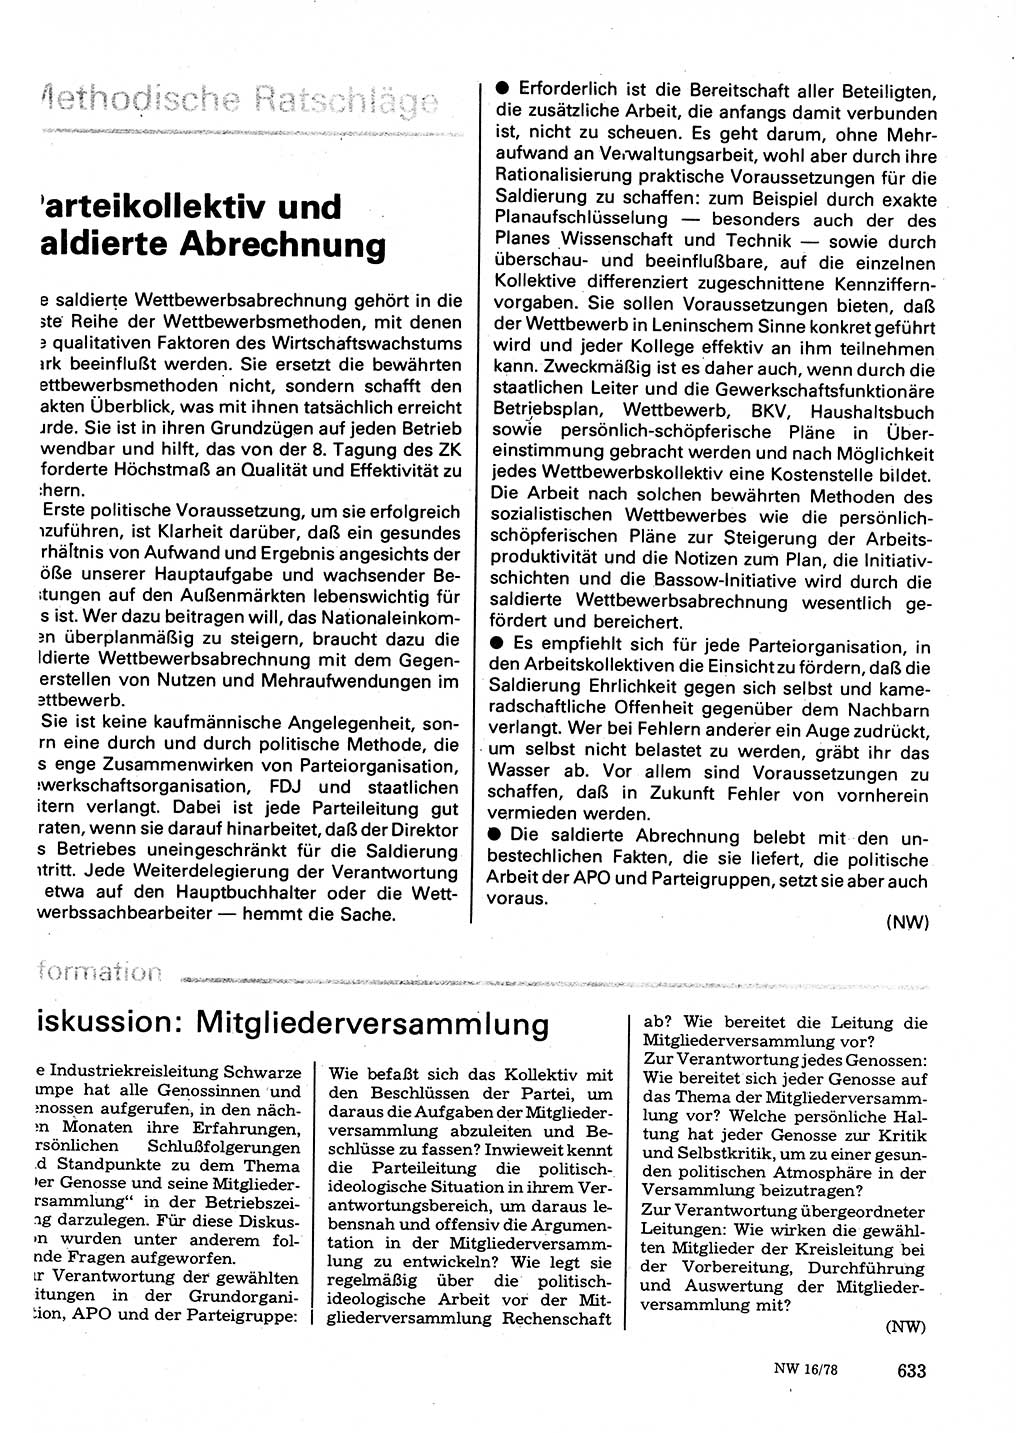 Neuer Weg (NW), Organ des Zentralkomitees (ZK) der SED (Sozialistische Einheitspartei Deutschlands) fÃ¼r Fragen des Parteilebens, 33. Jahrgang [Deutsche Demokratische Republik (DDR)] 1978, Seite 633 (NW ZK SED DDR 1978, S. 633)